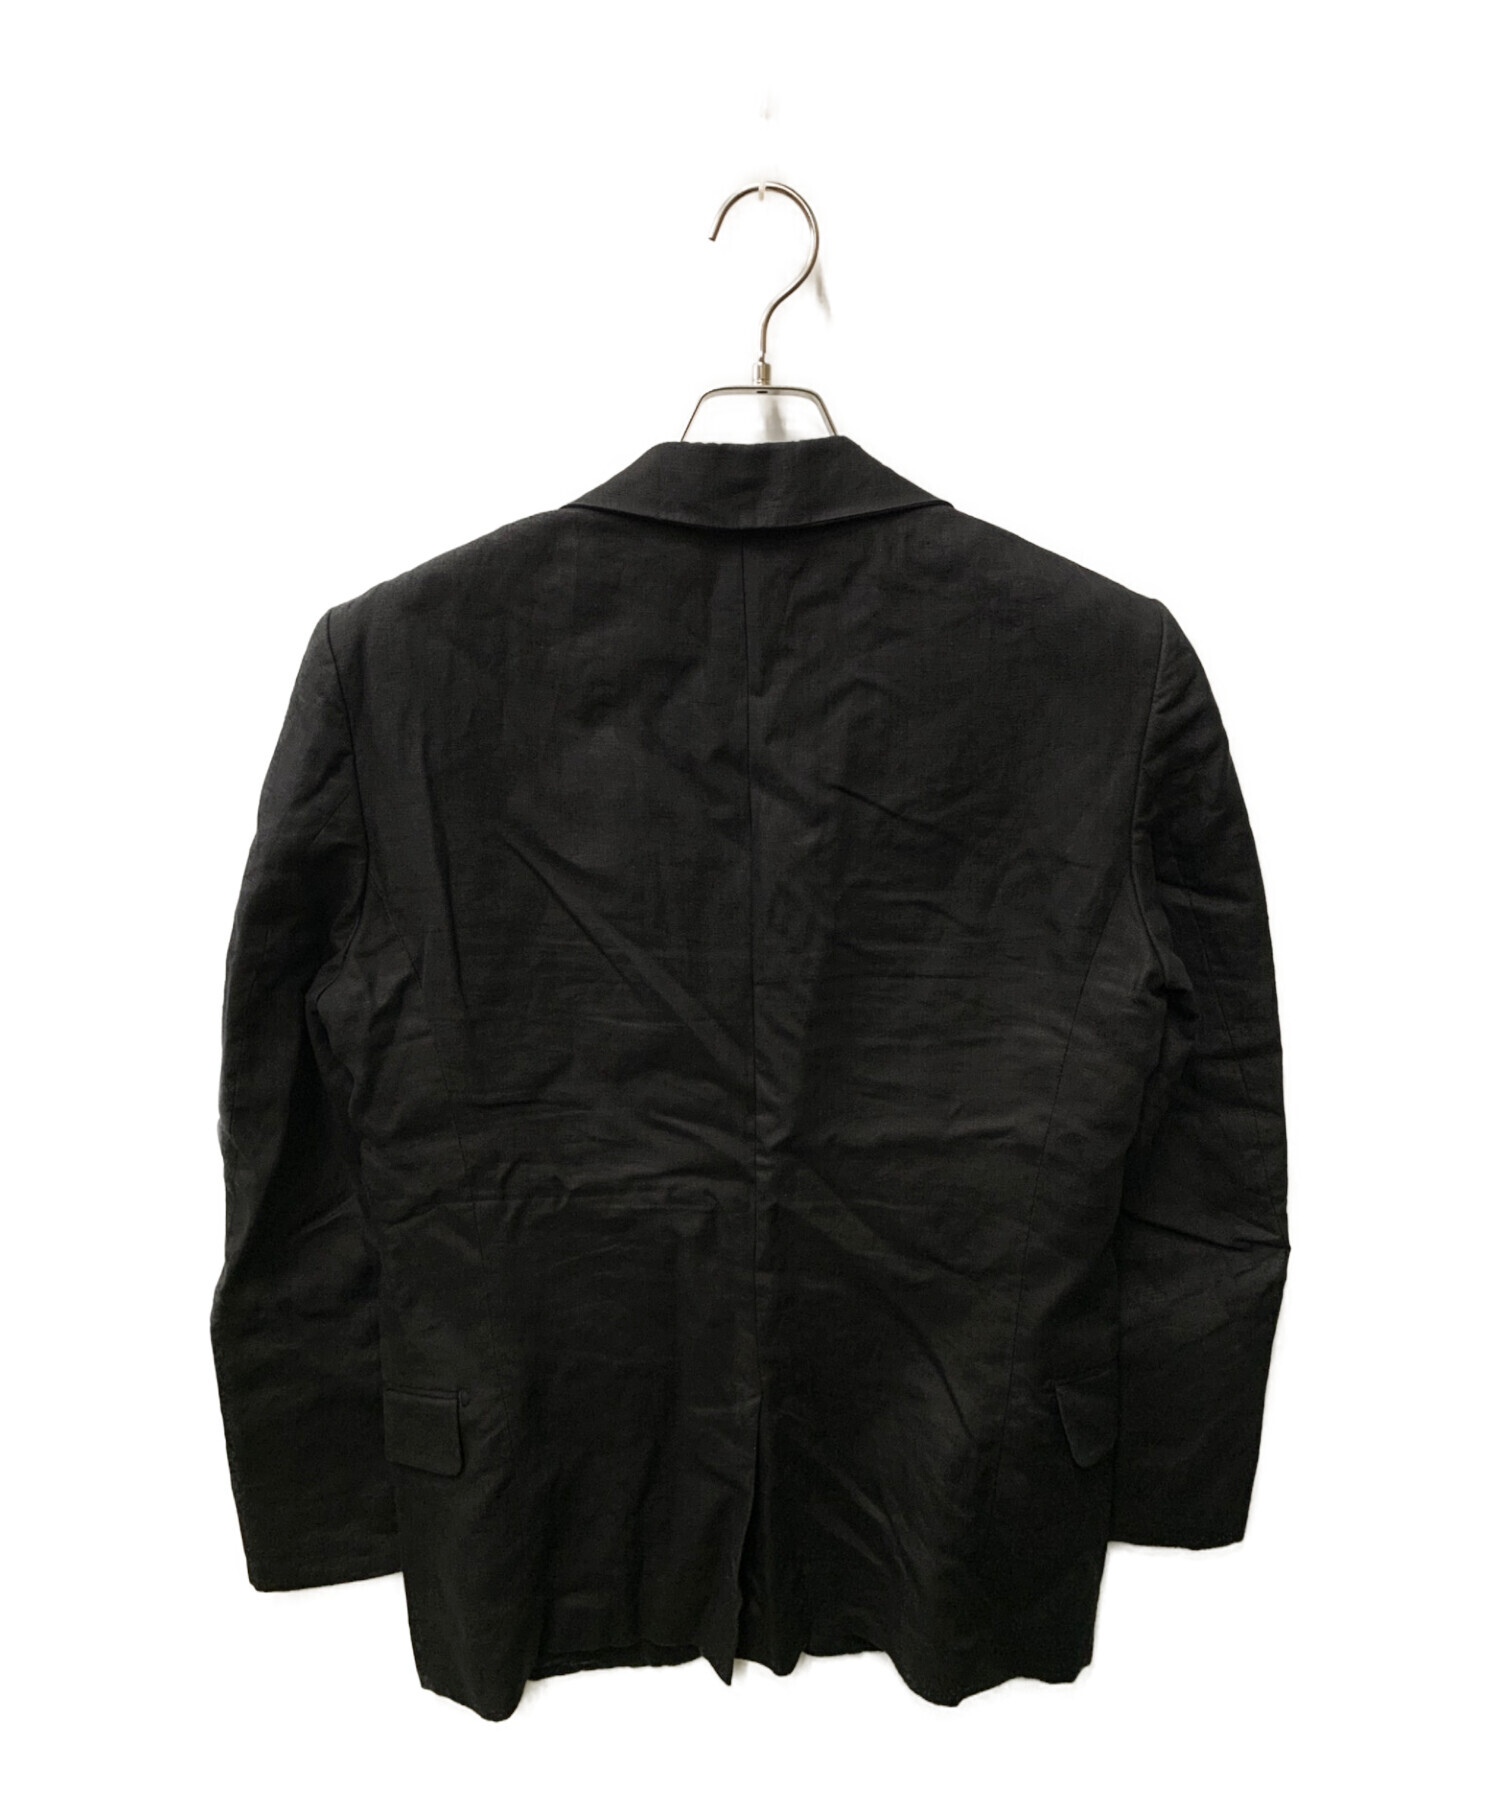 TOMORROW LAND PILGRIM (トゥモローランド ピルグリム) リネンテーラードジャケット ブラック サイズ:46